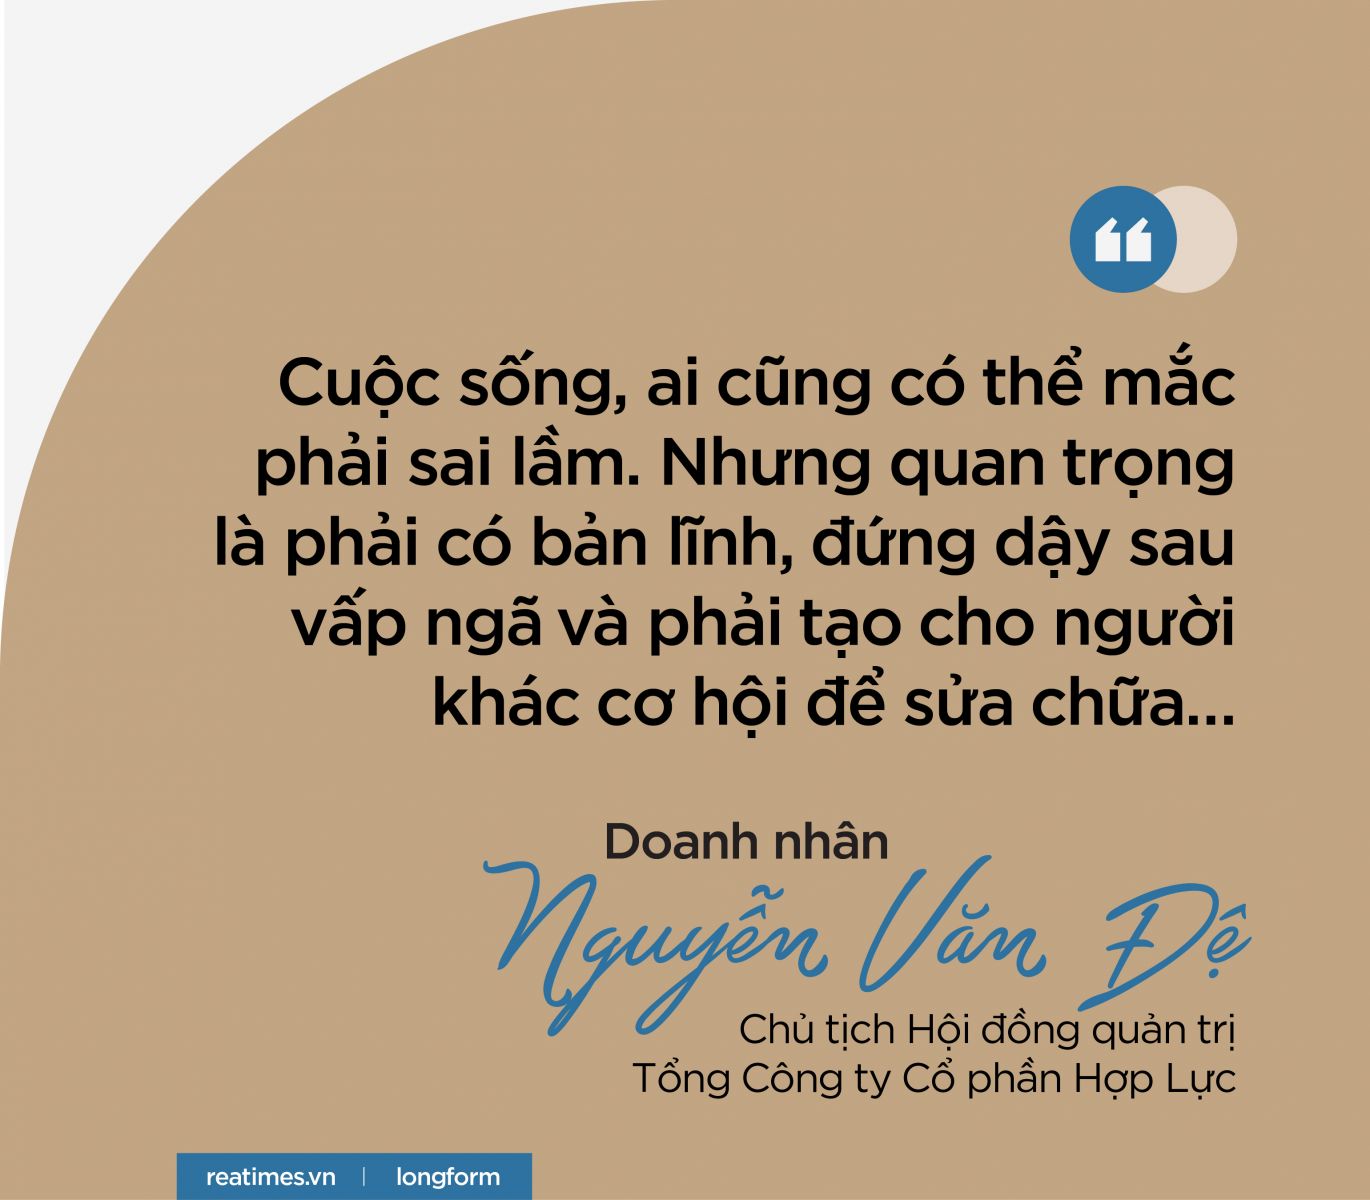 Doanh nhân Nguyễn Văn Đệ